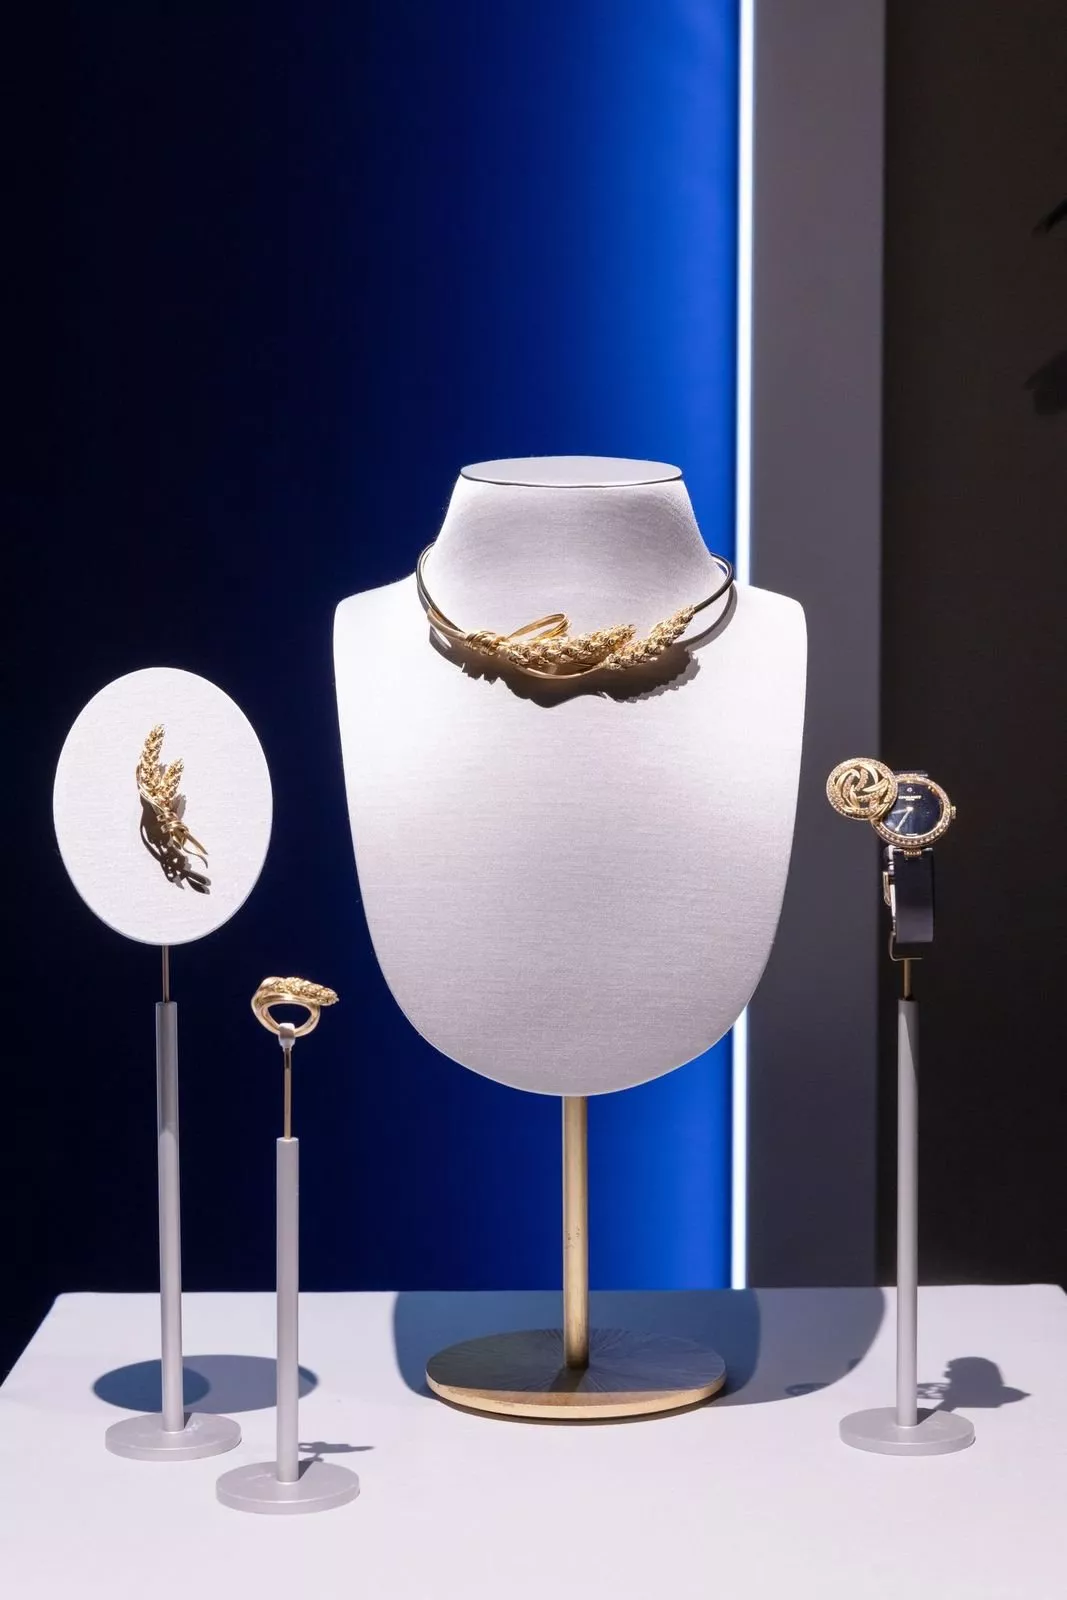 دار شوميه تطلق معرض جوزيفين للمجوهرات الراقية، الأول لها في الدوحة